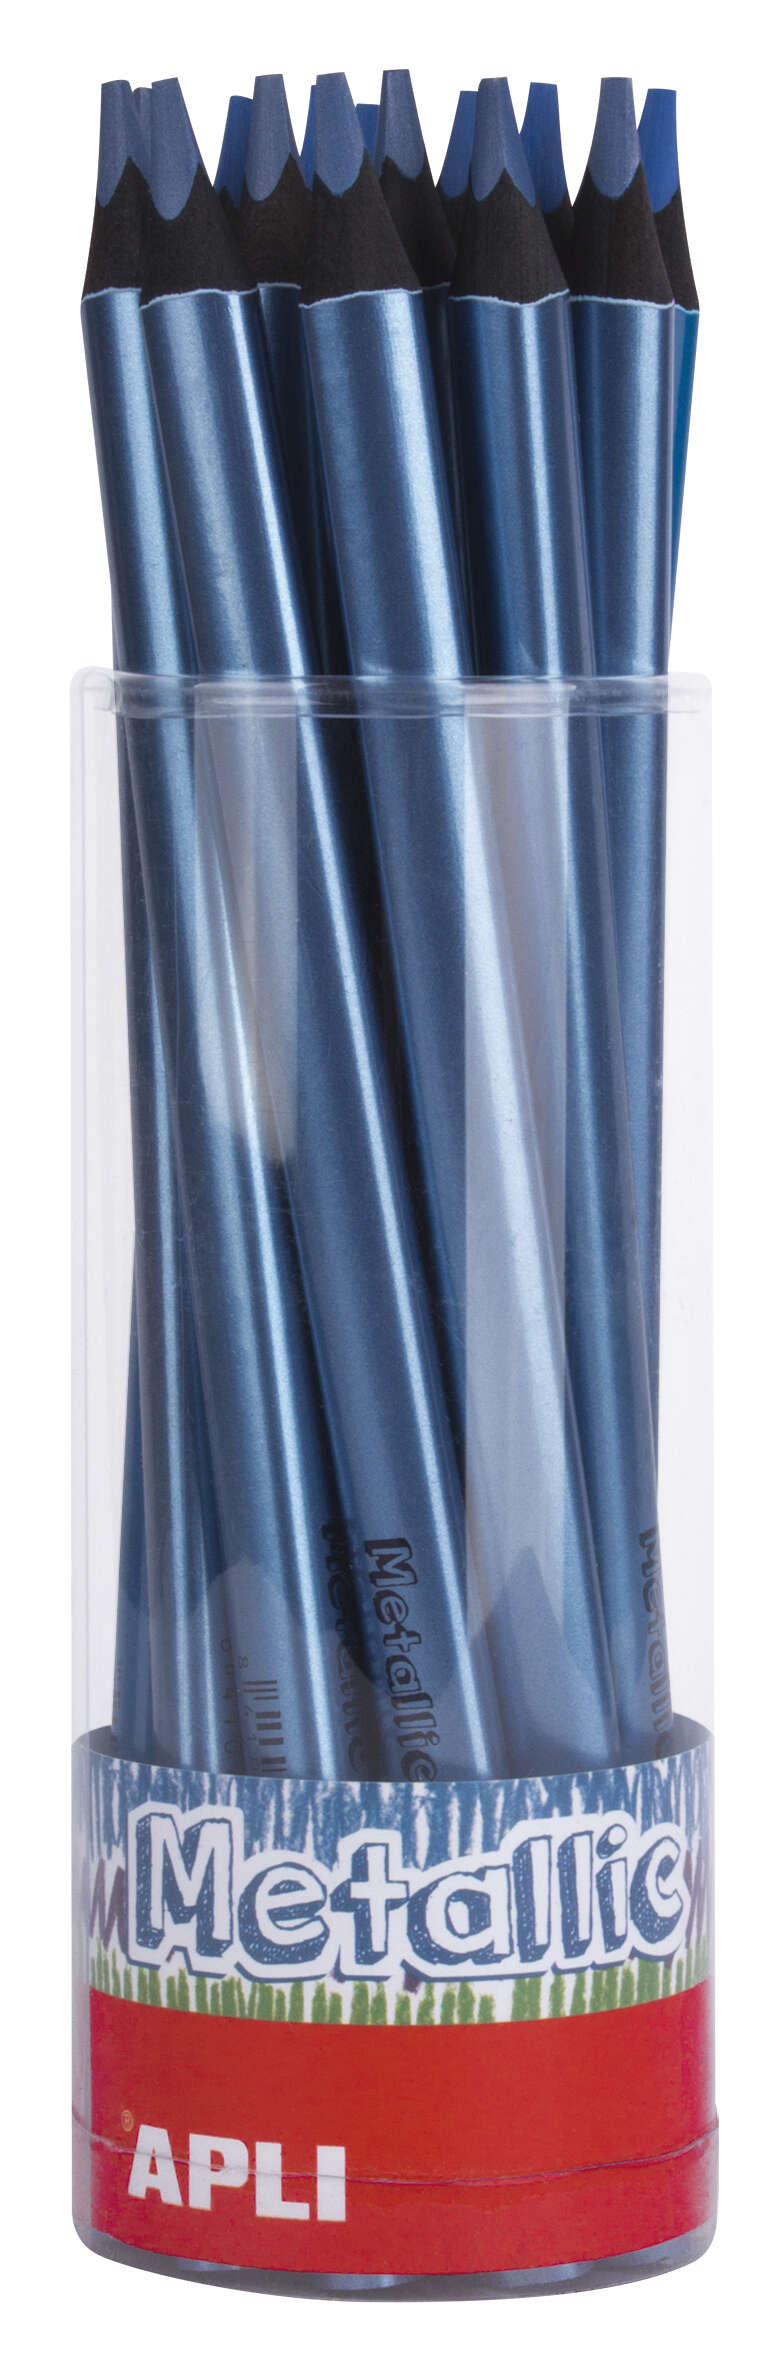 Apli Lapices Jumbo Metallic Azul Metalizado - 5Mm De Grosor Triangular - 18 Unidades Por Pack - Ideal Para Mejor Sujecion Y Mayor Cobertura En Un Solo Trazo - Formato Practico Para Expositor